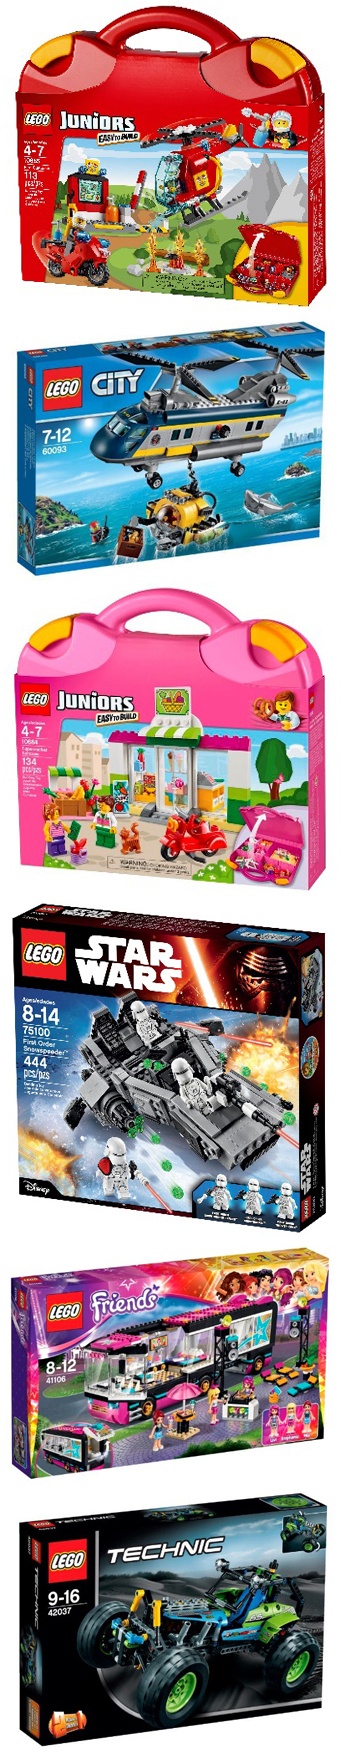 Nya Lego Junior-set och 5 andra Lego-favoriter till jul